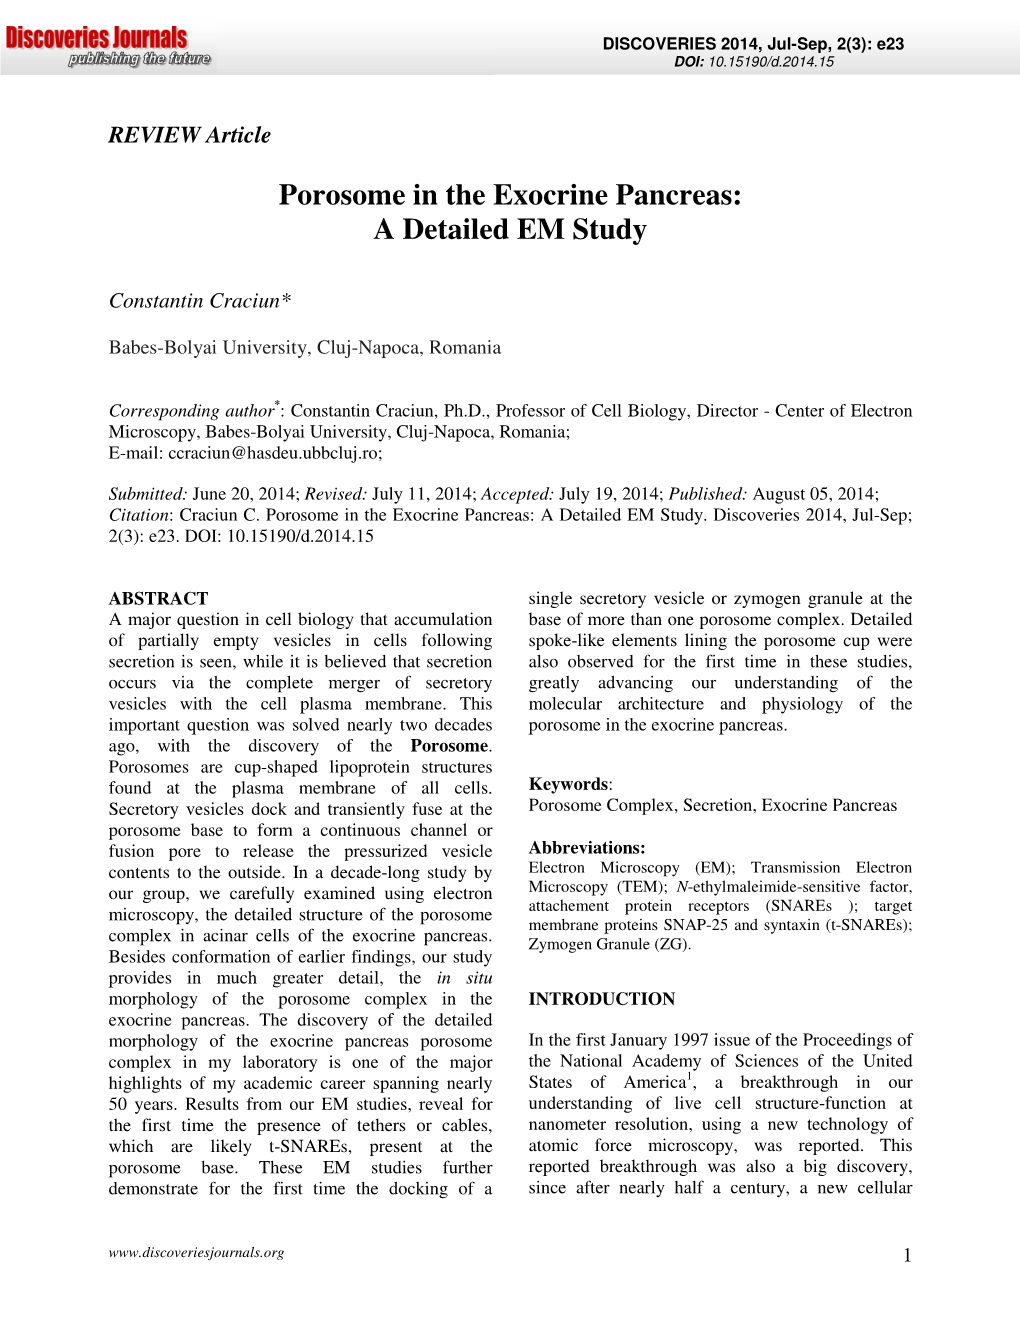 Porosome in the Exocrine Pancreas